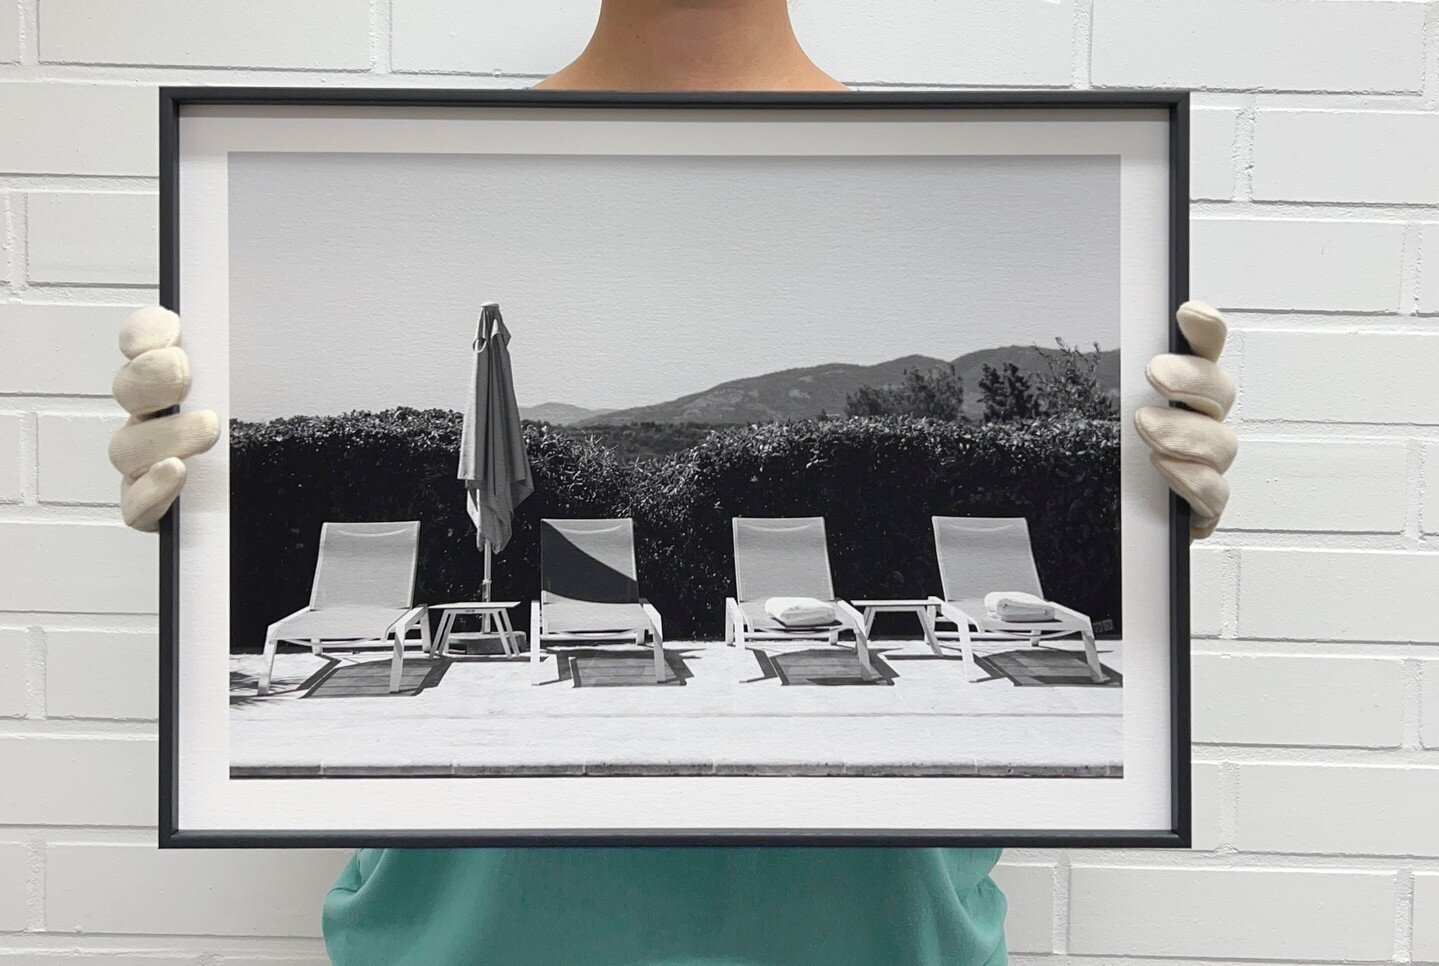 Eveliina Mustonen / @eveliinamustonen⁠
⁠
Hahnem&uuml;hle Fineart Print with Black aluwood frames.⁠
⁠
⁠
#dialab #dialabfineart #fineart #gicleeprint #artprint  #archivalprint #valokuvan&auml;yttely #valokuvaus ⁠
#wallart  #interior #sisustus⁠
#taulu #